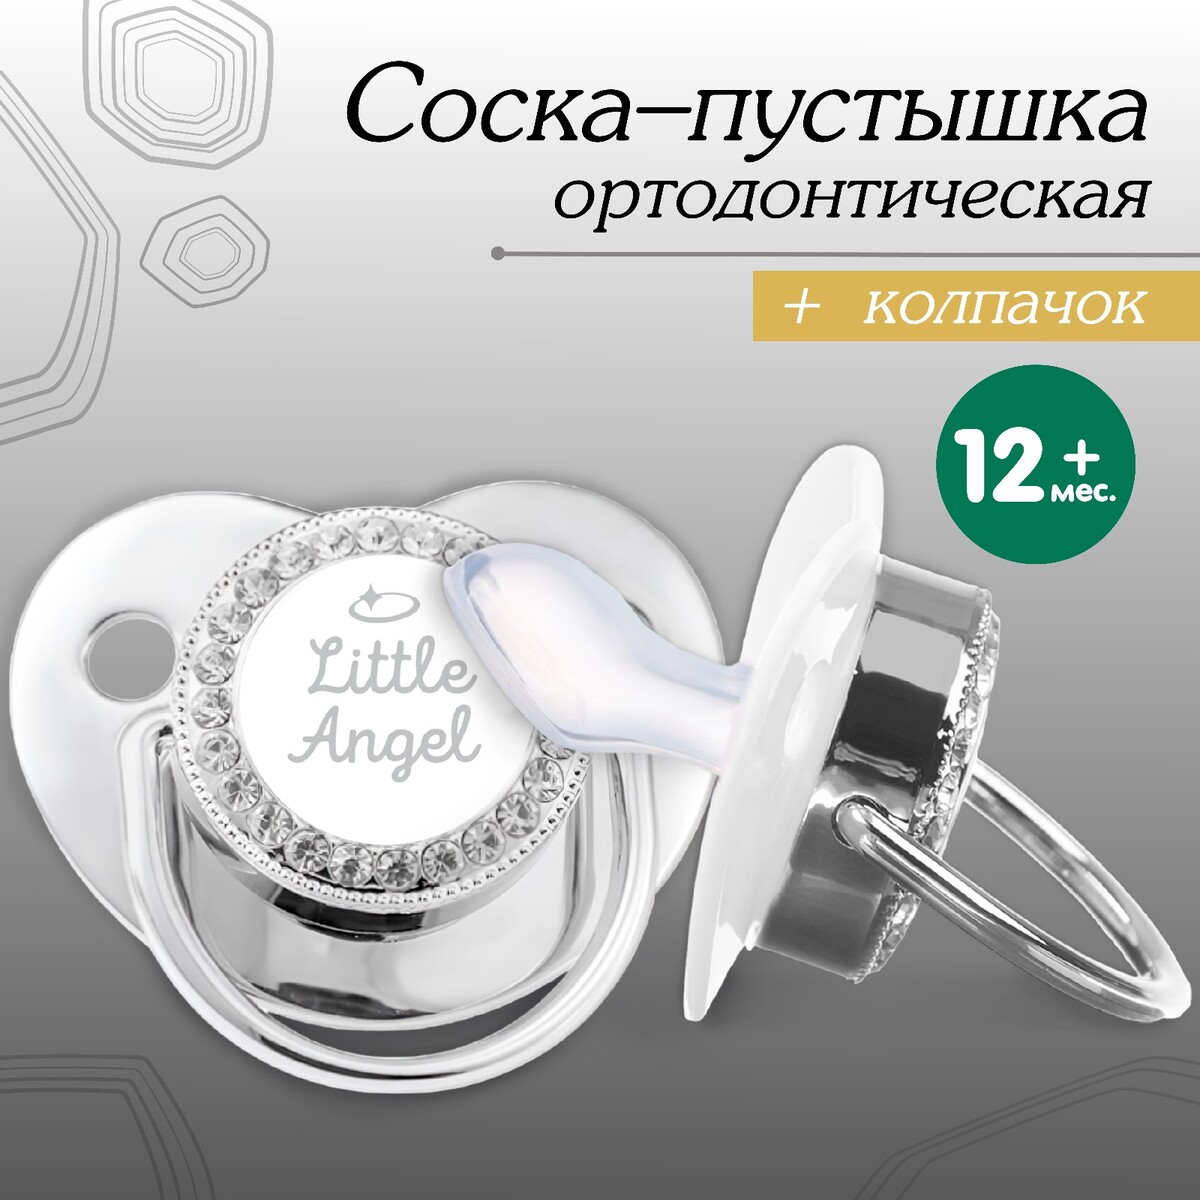 Соска - пустышка ортодонтическая, little angel, с колпачком, +12мес., серебряная, стразы серебряная монетка